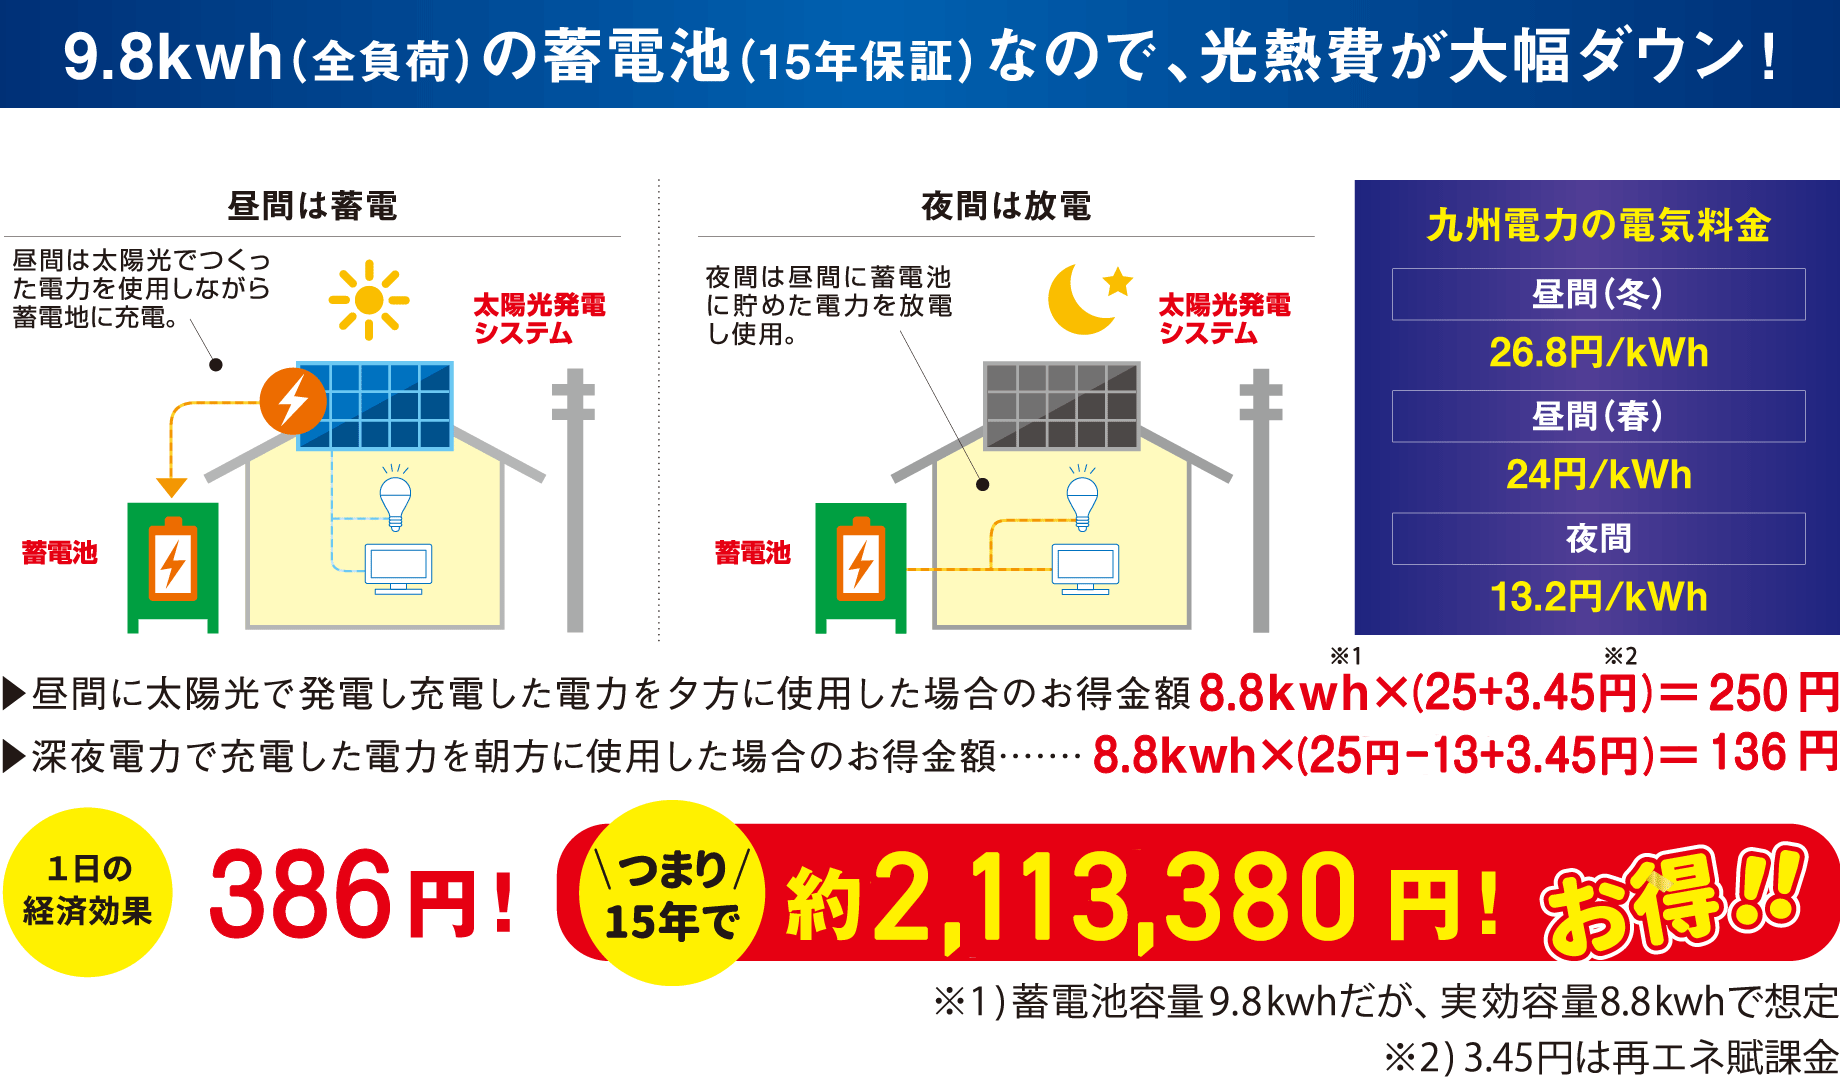 8.8kWh(全負荷)の蓄電池(15年保証)なので、光熱費が大幅ダウン